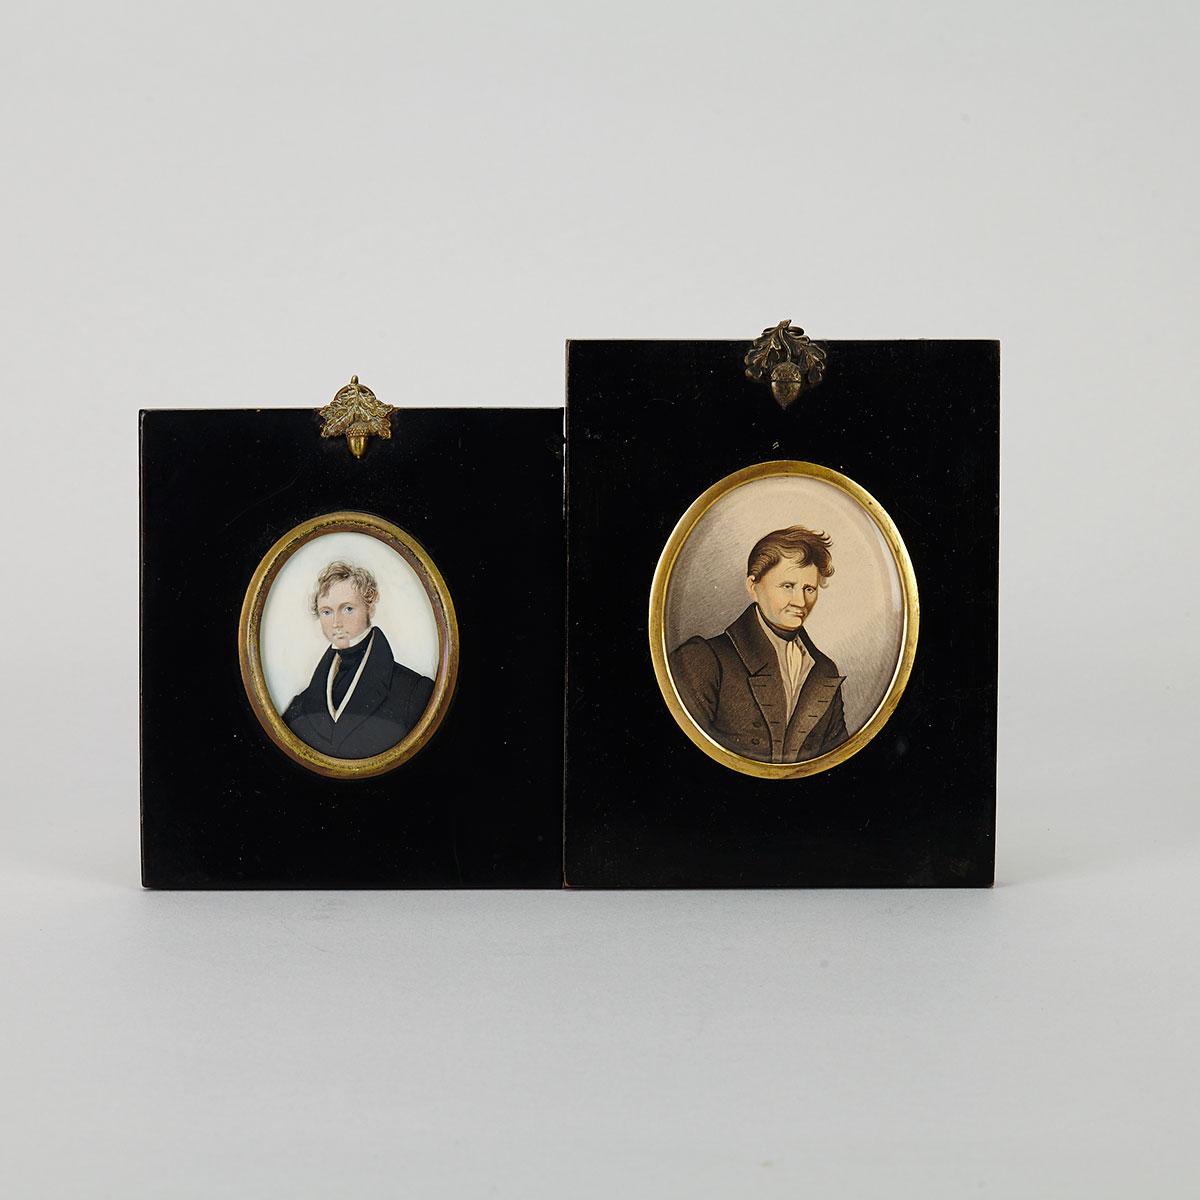 Two English School Portrait Miniatures of Gentlemen, c.1830